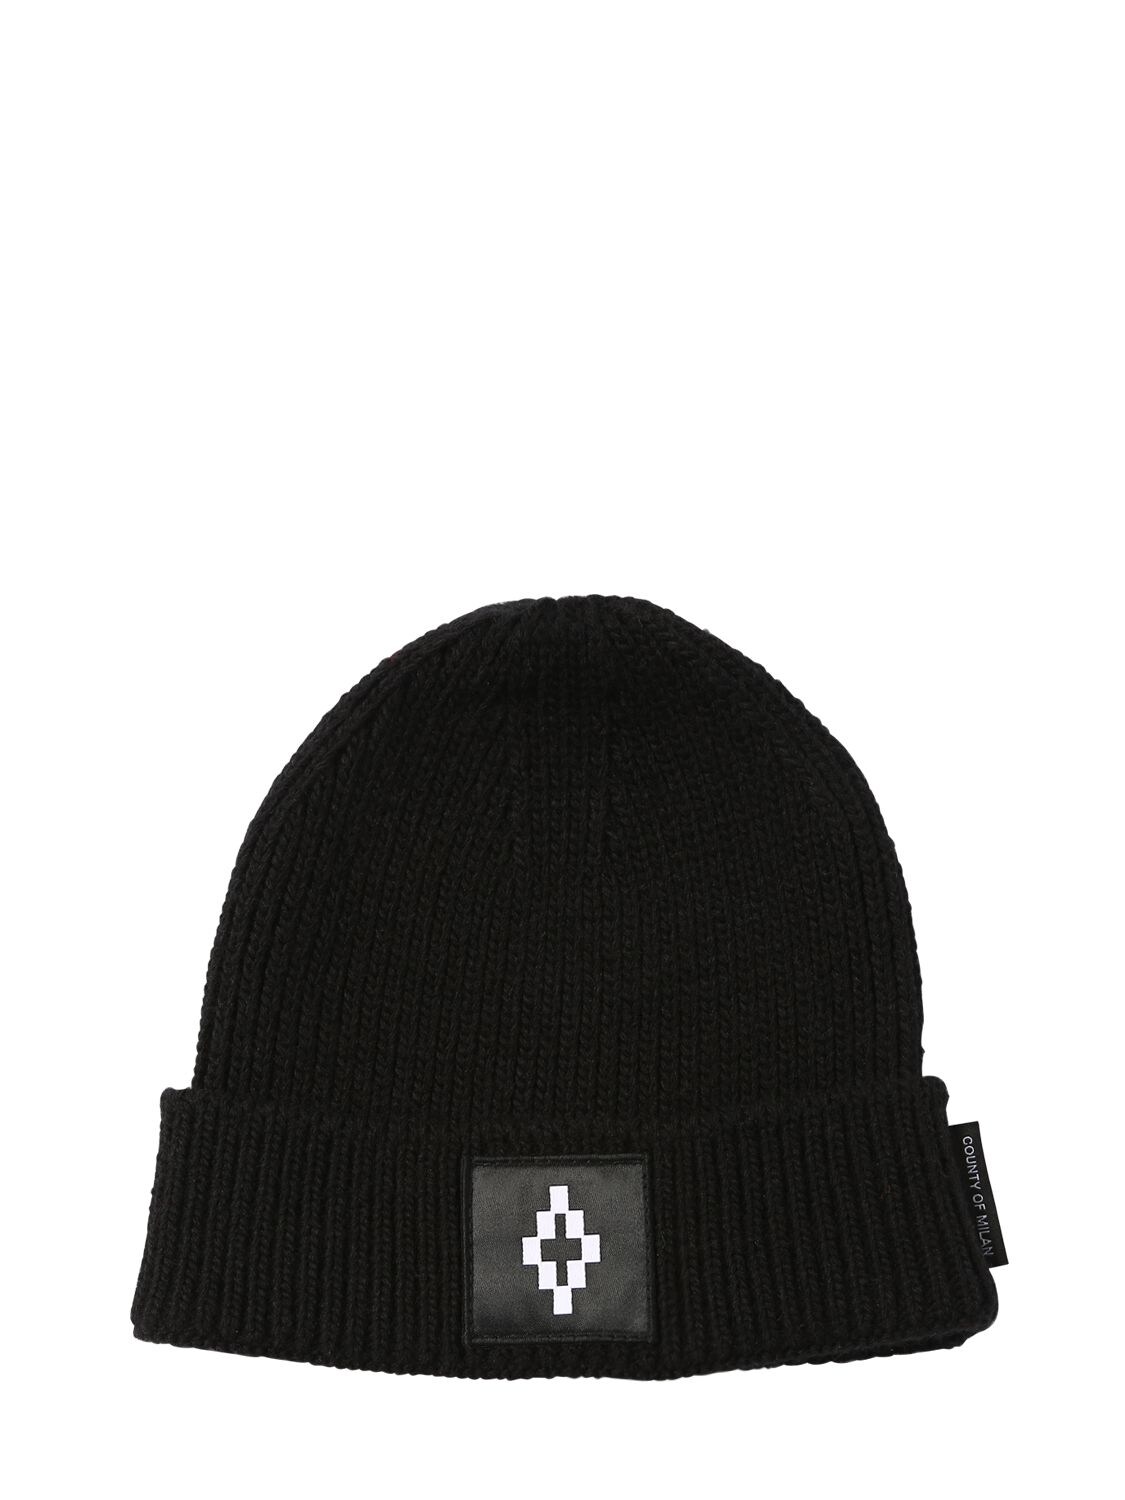 Marcelo Burlon County Of Milan Logo Cross Patch Tech Beanie Hat In Black